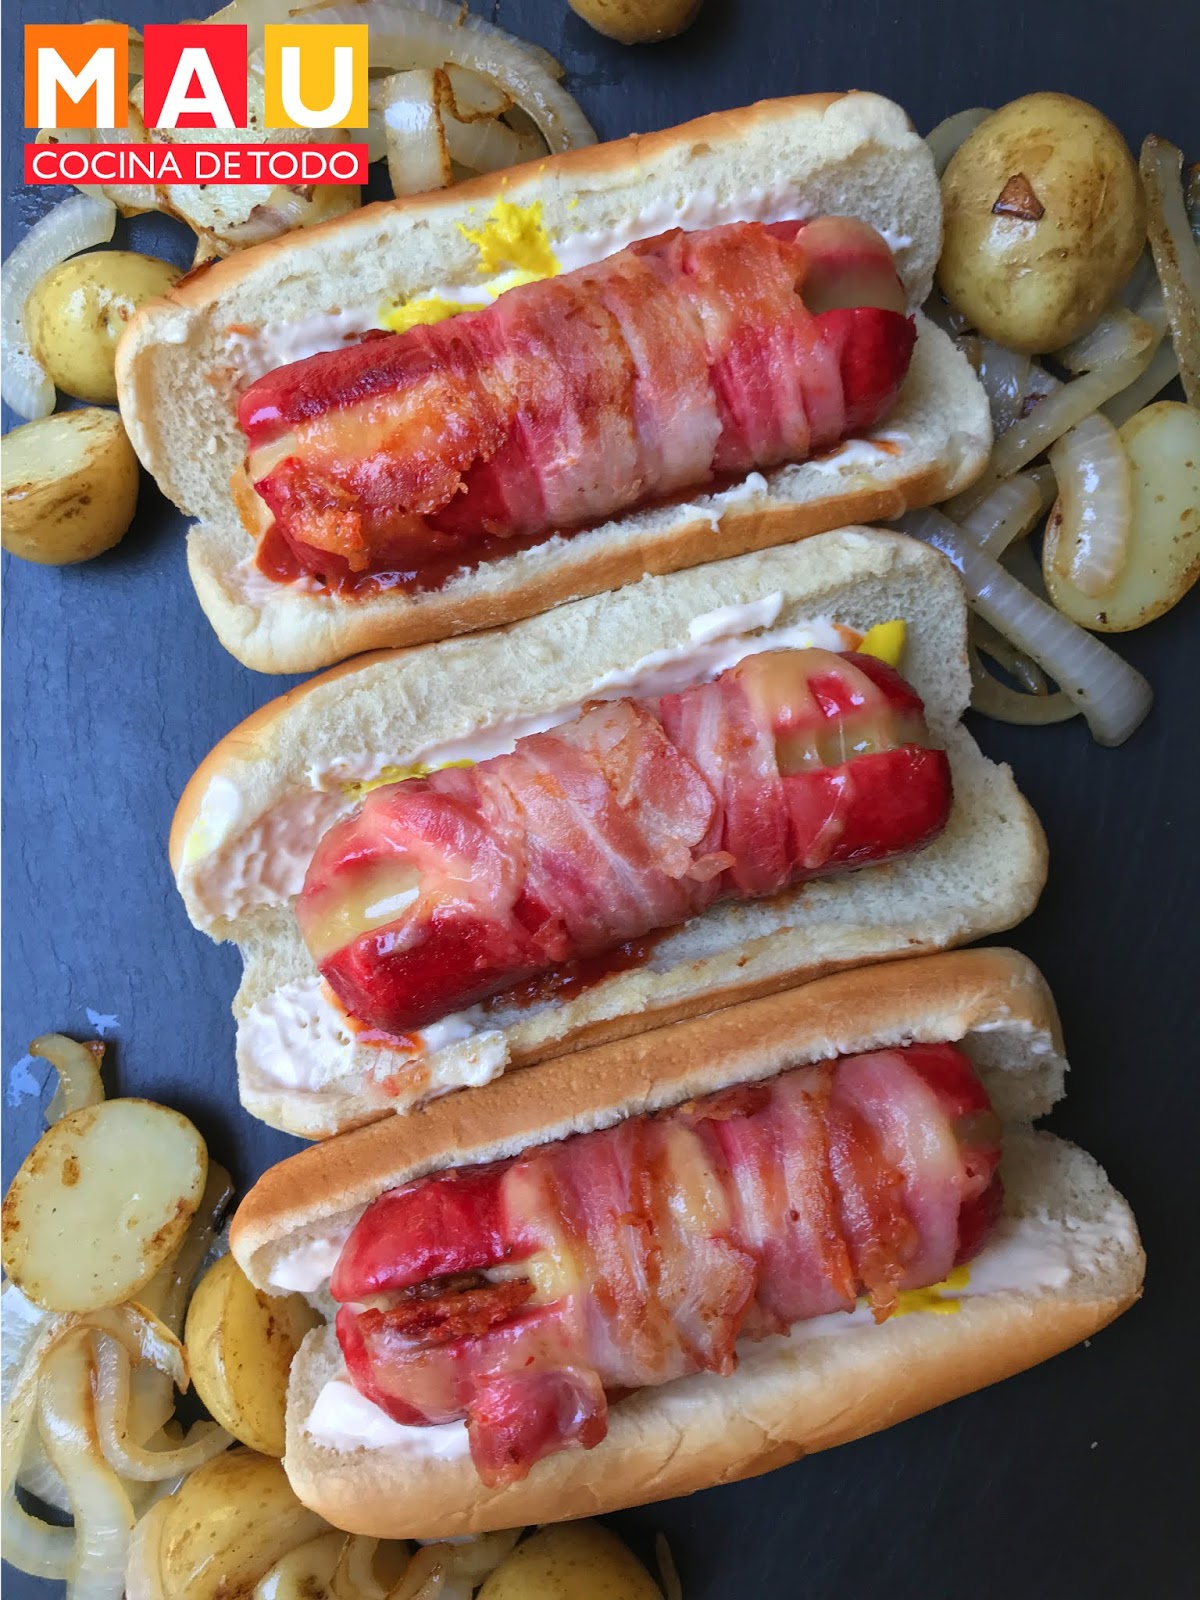 Mau Cocina de Todo: Hochos (Hot Dogs Callejeros)